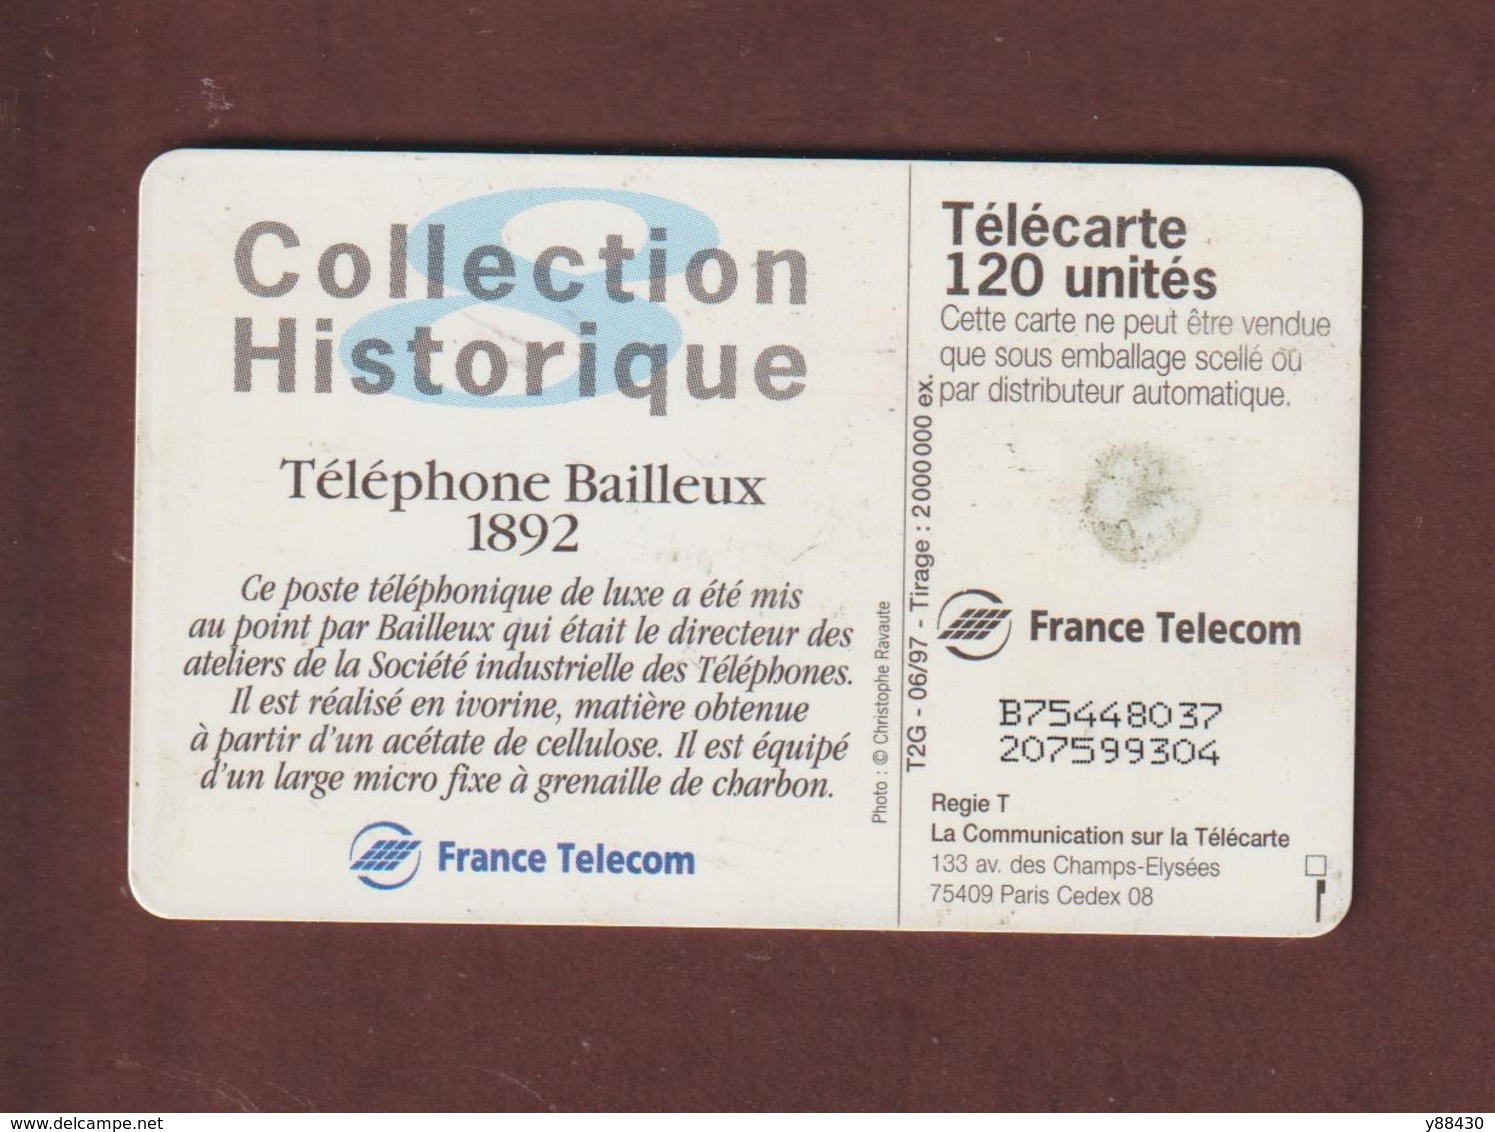 TELECARTE - Carte Téléphonique De 120 Unités - Téléphone Bailleux 1892  - 2 Scannes. - 120 Units